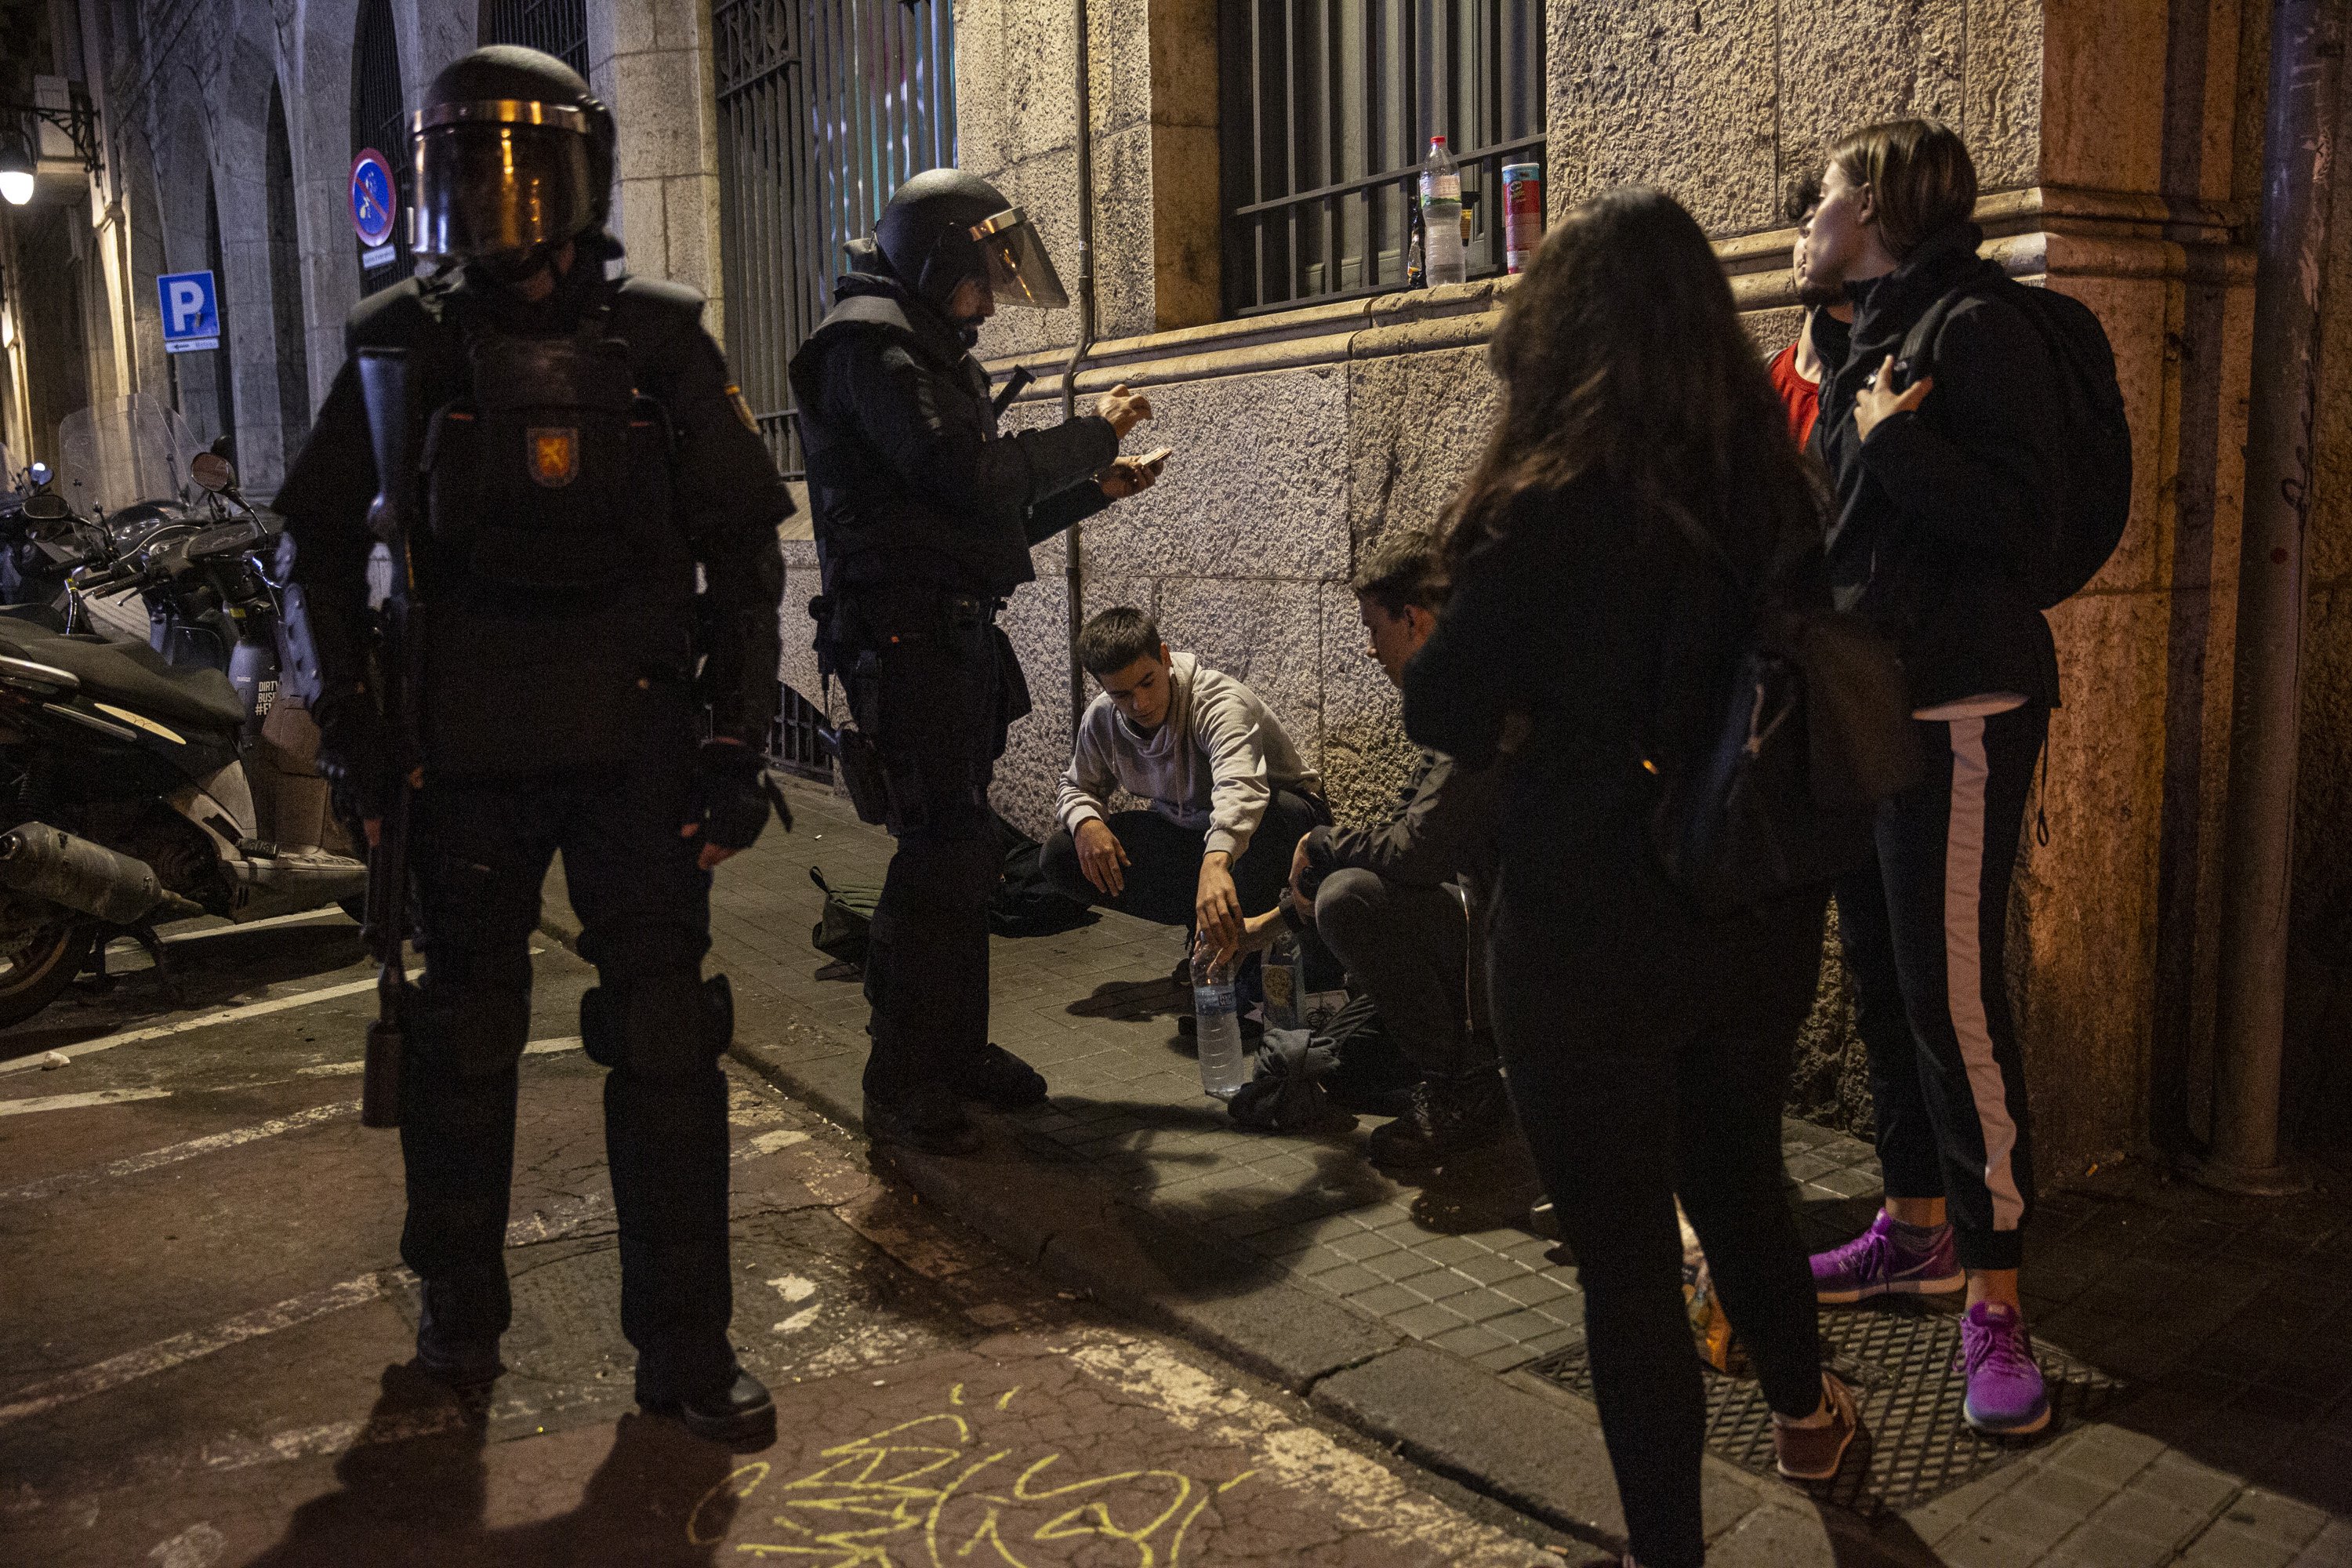 El director general del CNP aplaude la tarea "irreprochable" de los agentes en Catalunya